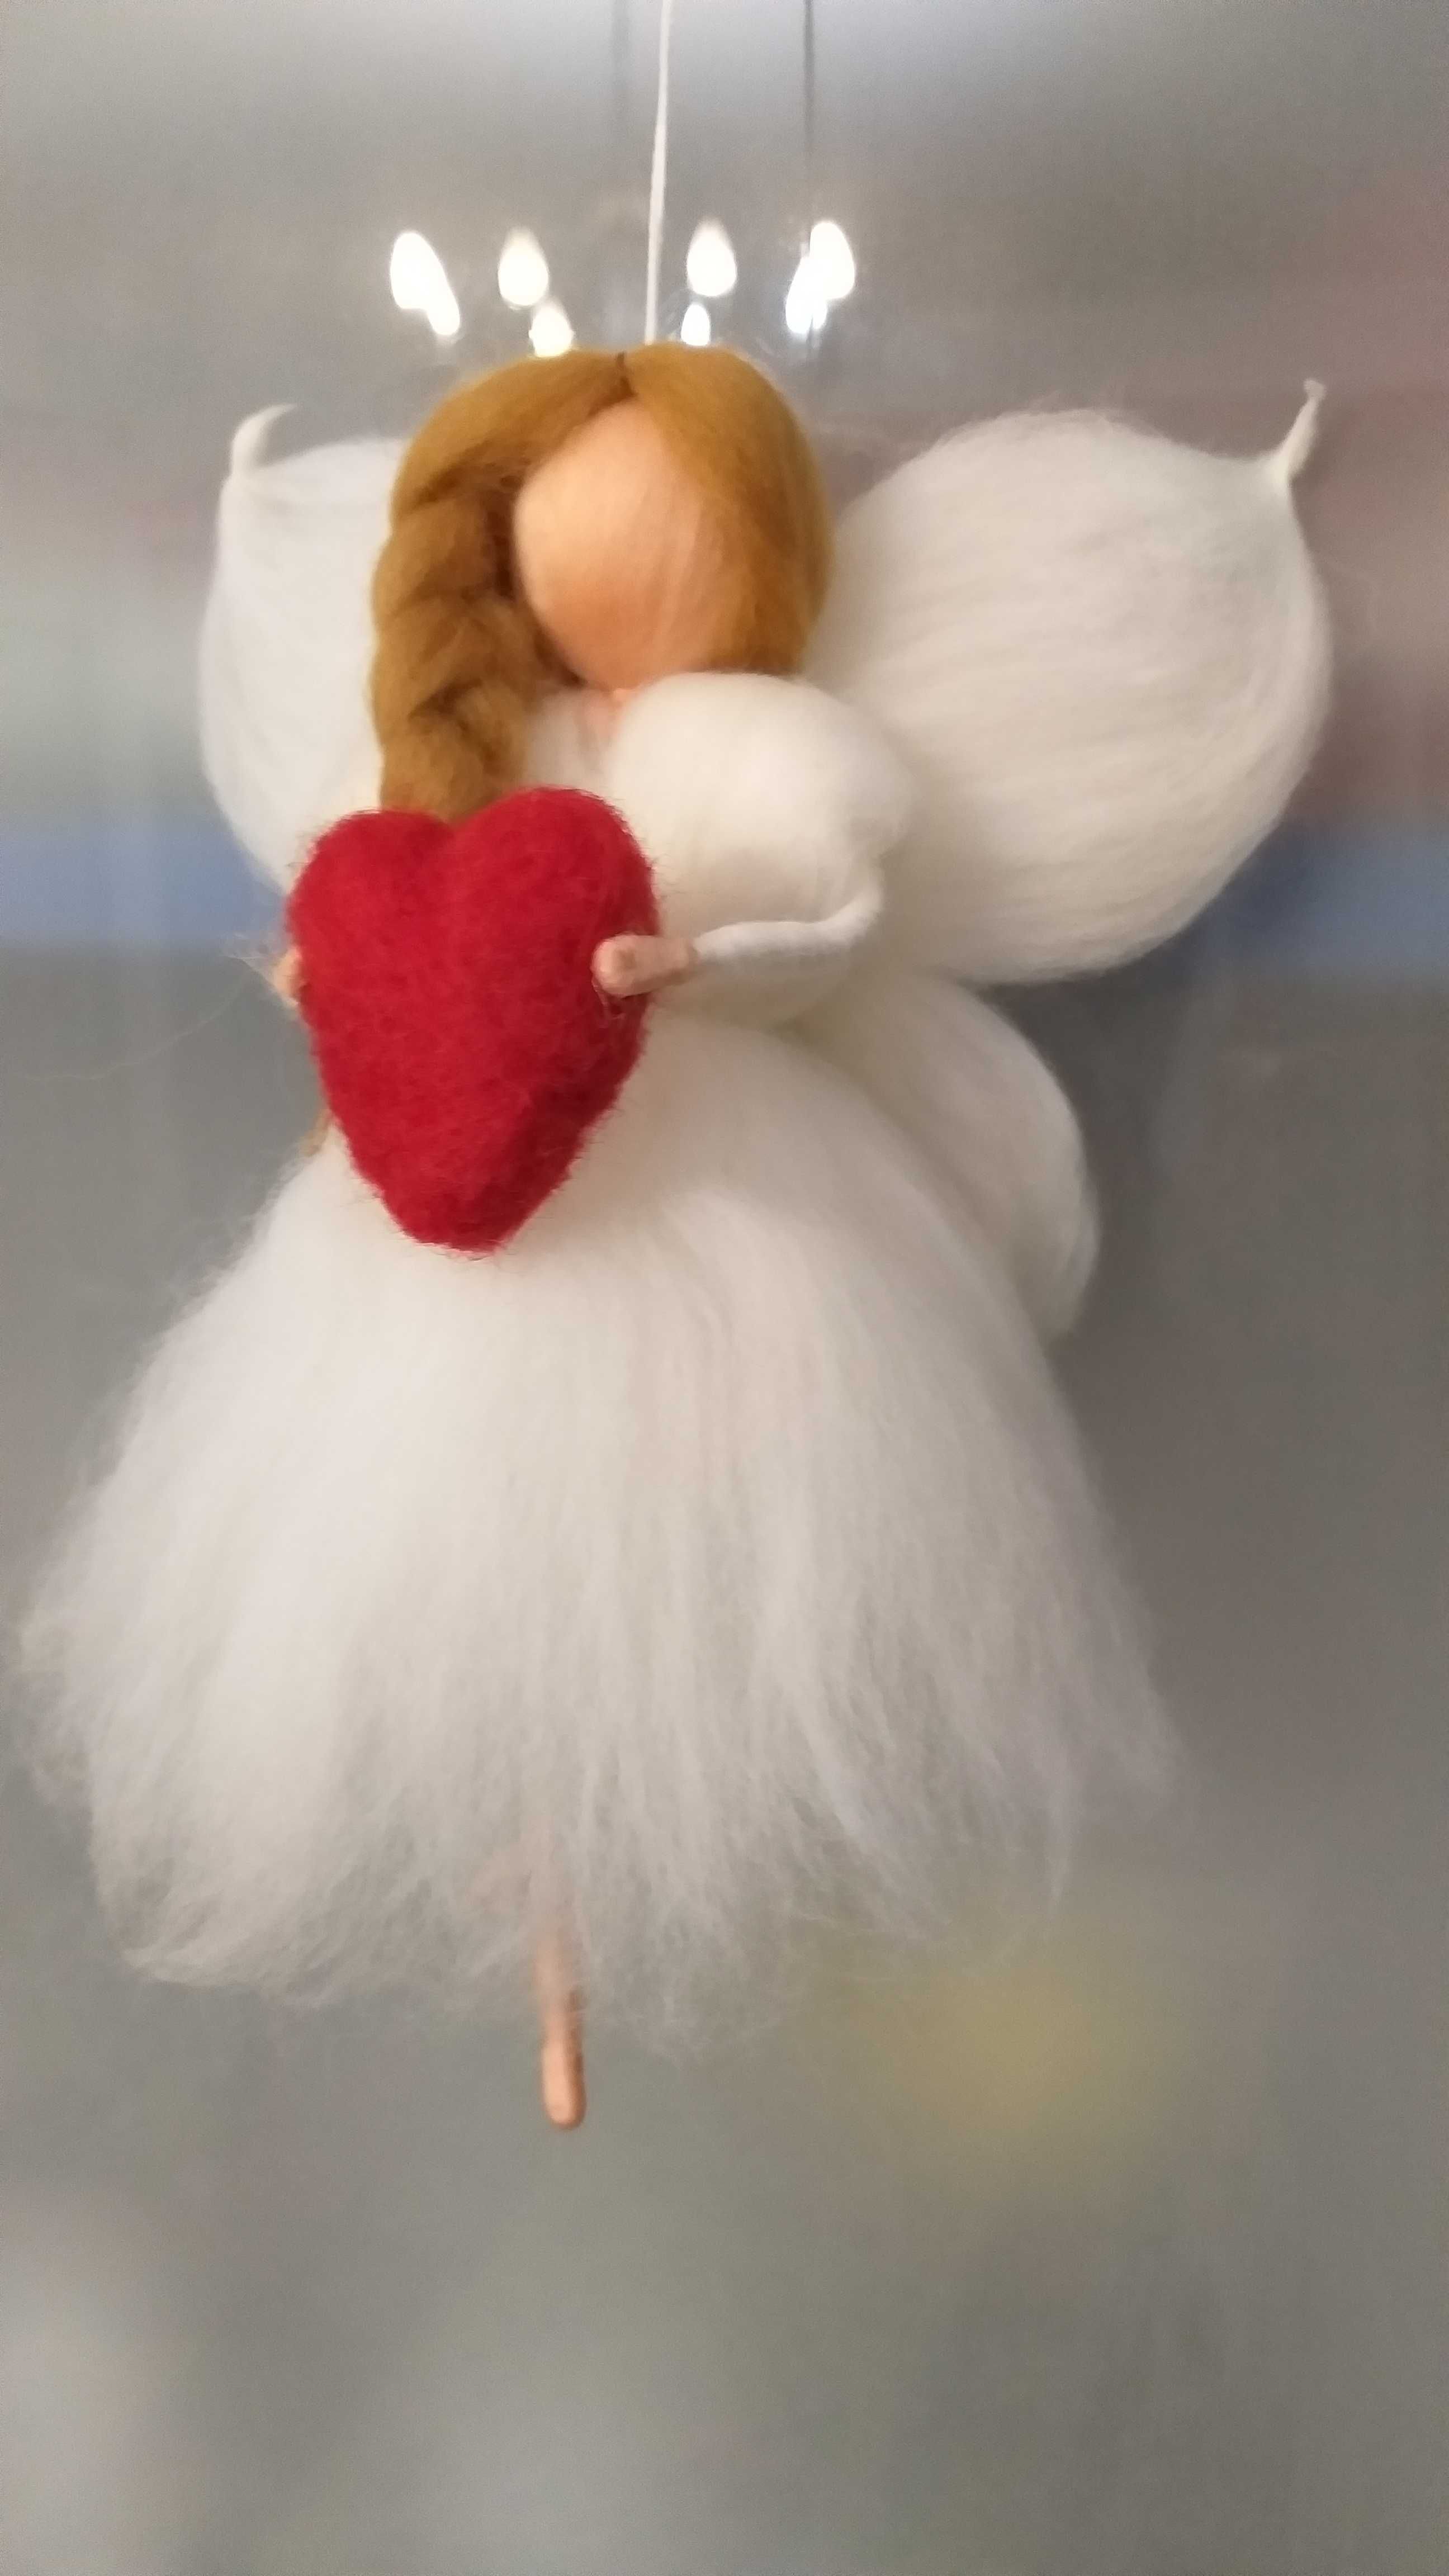 Zânuța cu inimioara-Figurină din lână inspirată din pedagogia Waldorf.